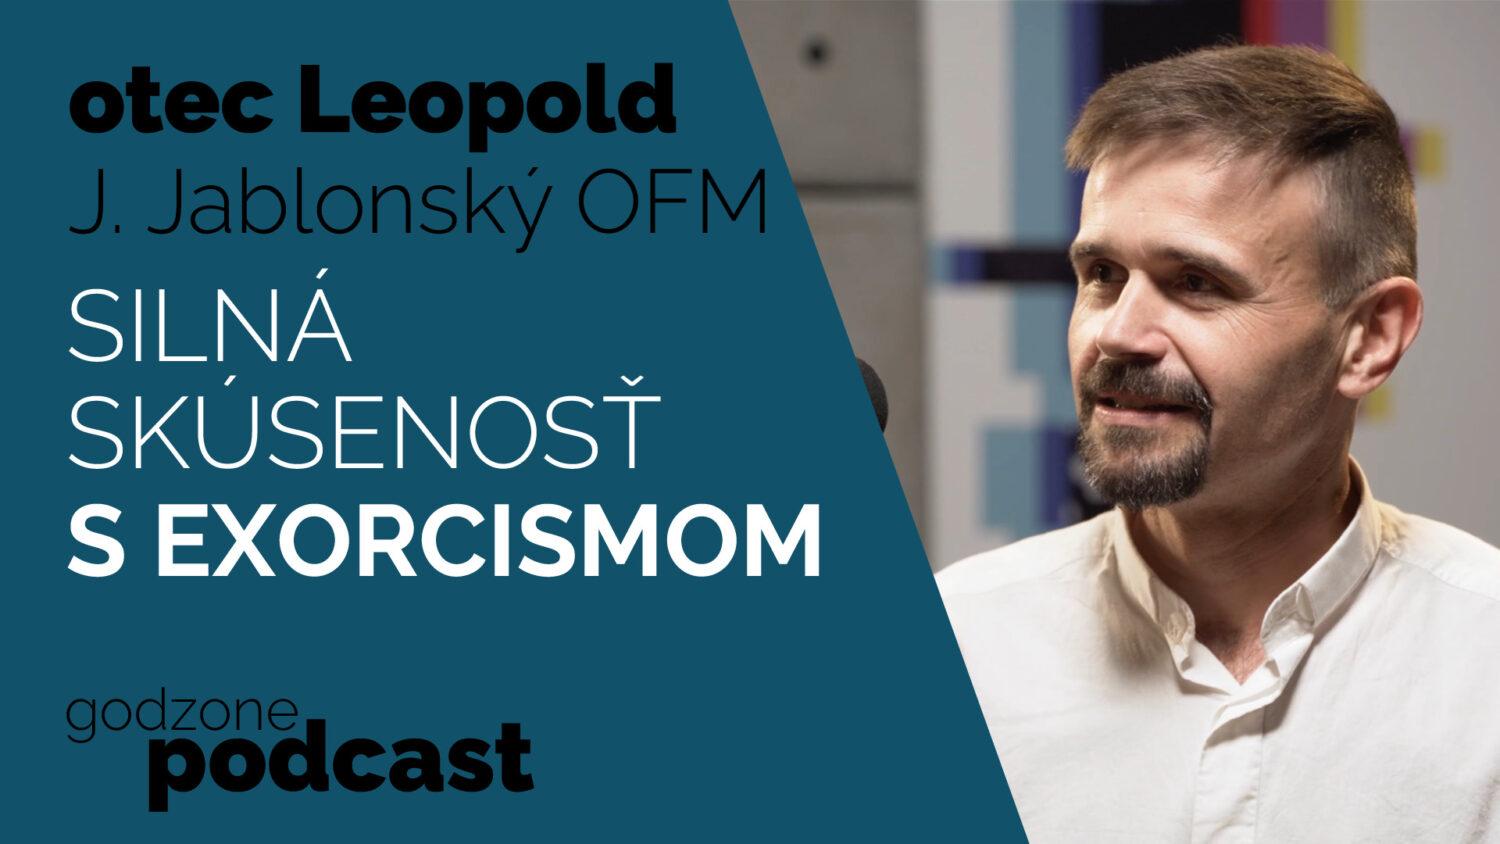 Godzone podcast_ Otec Leopold J. Jablonský OFM: Silná skúsenosť s exorcizmom